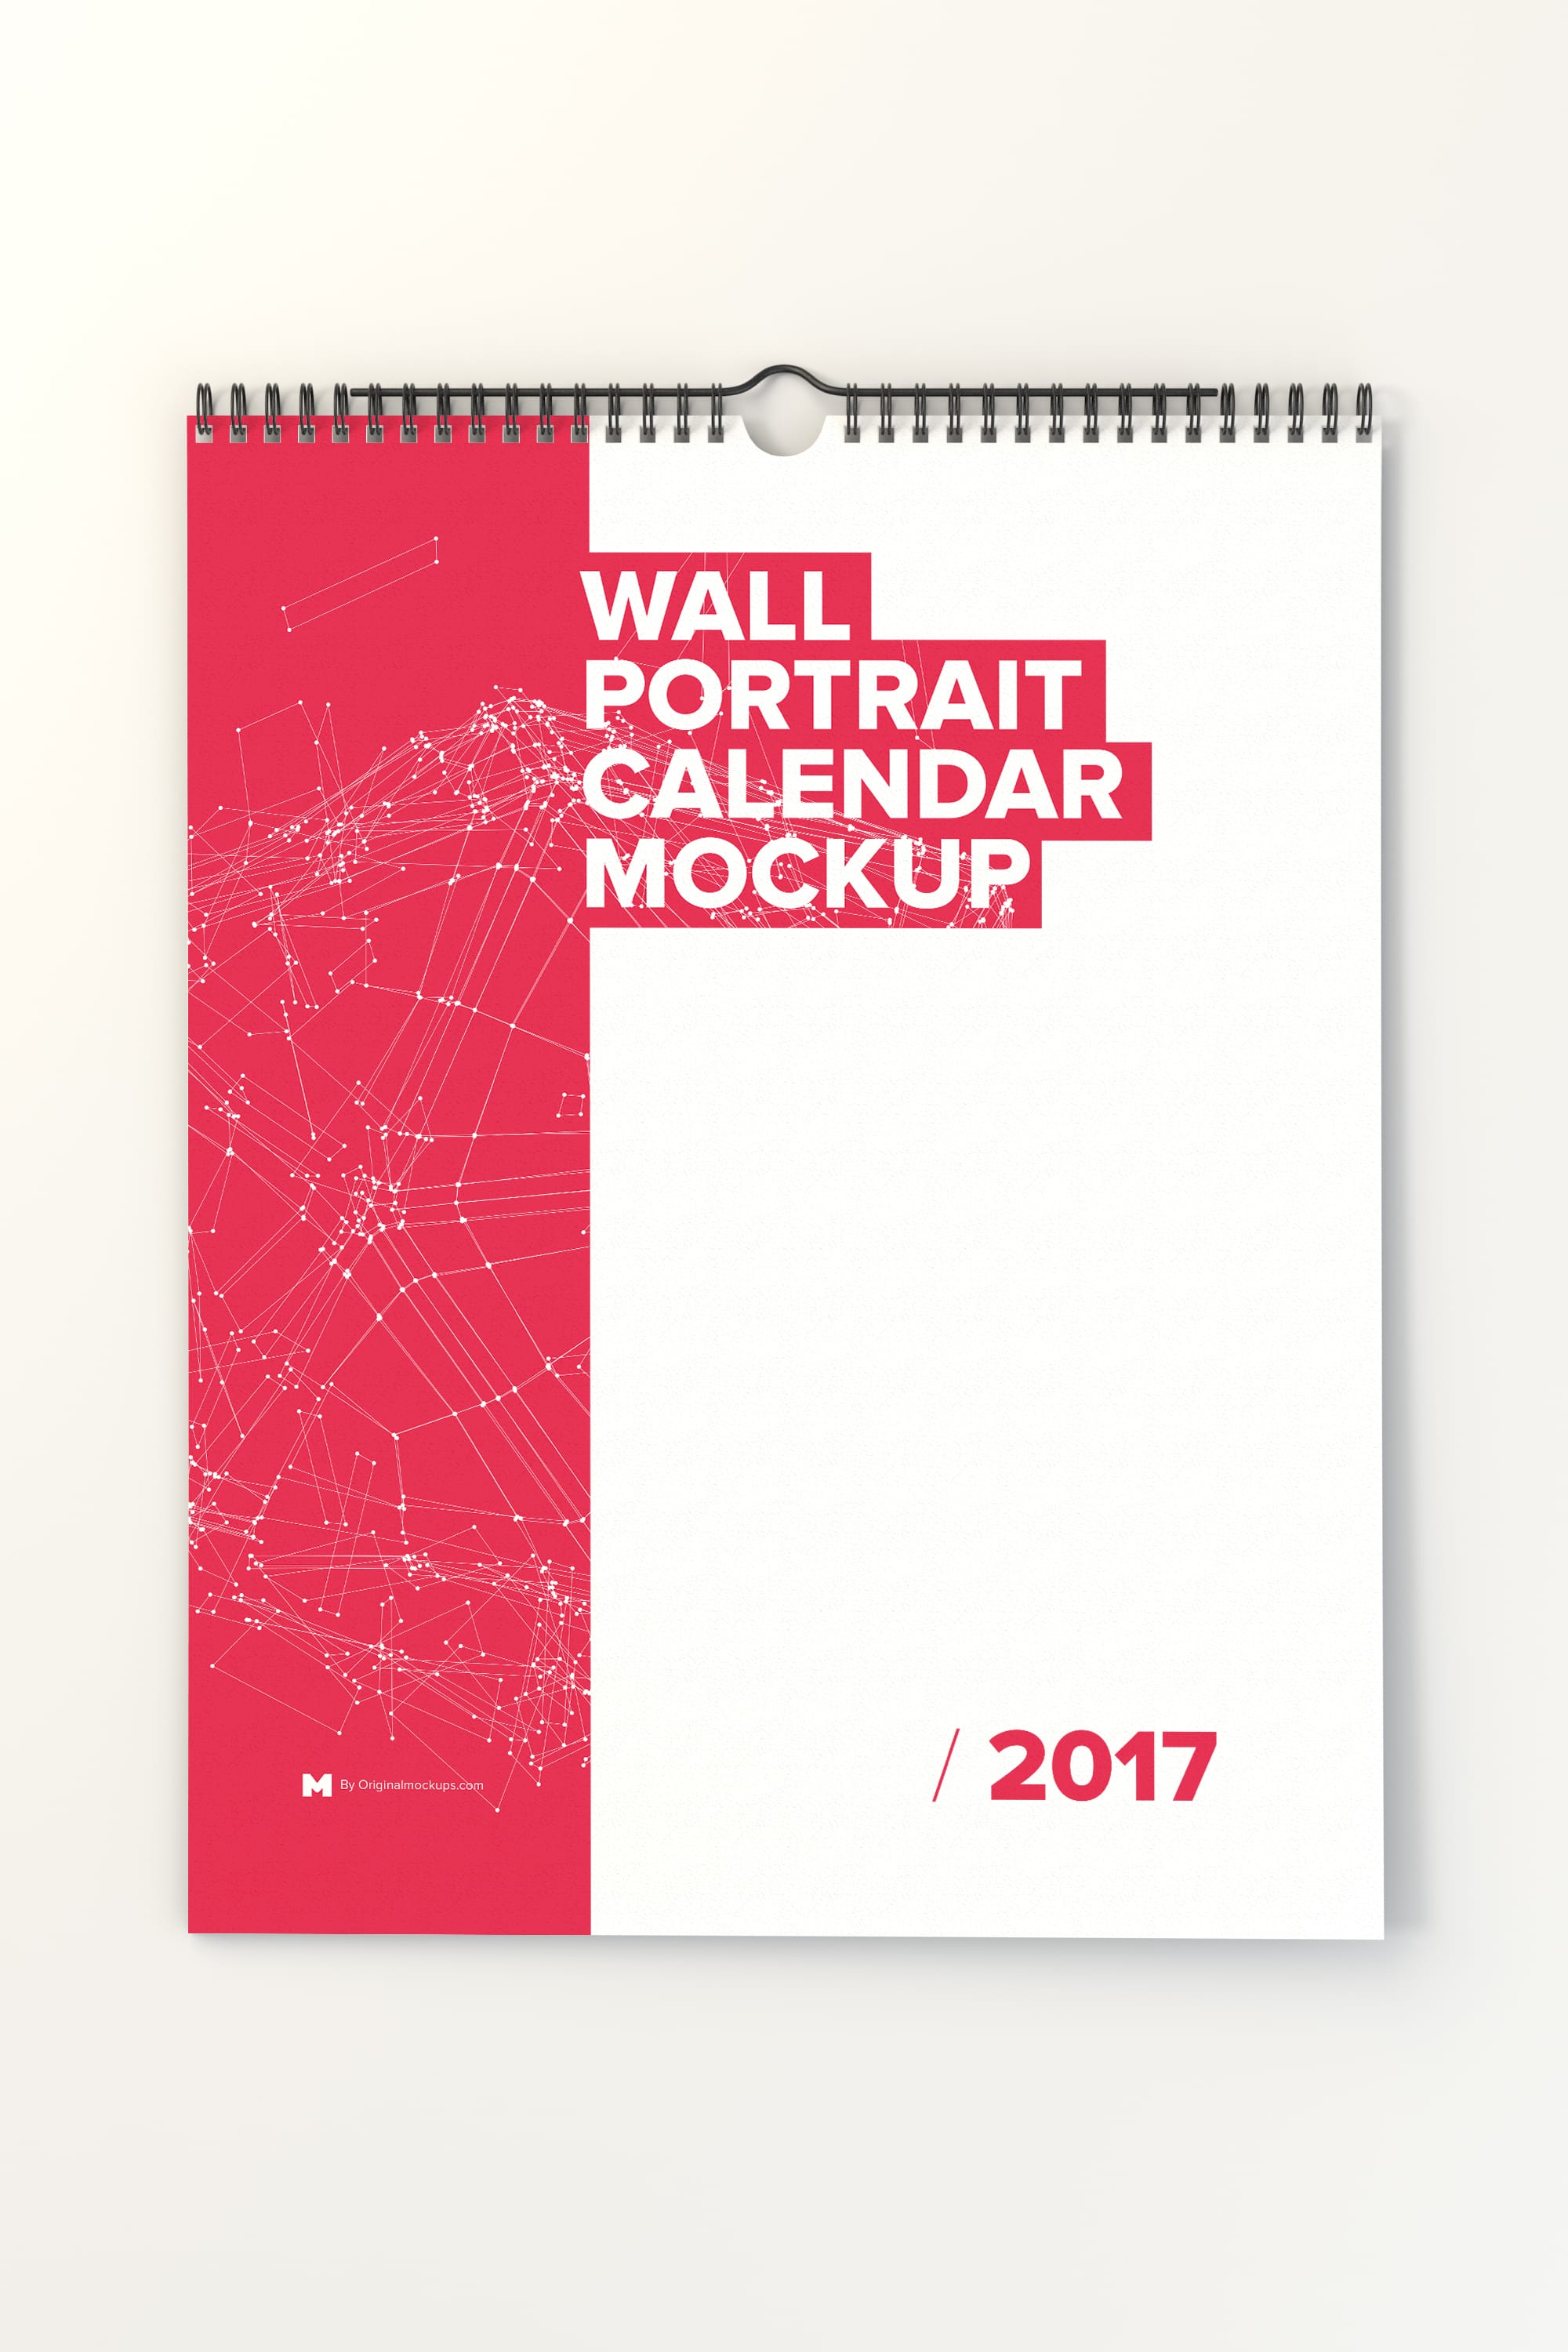 挂墙日历年历设计样机模板 Wall Portrait Calendar Mockup插图(1)